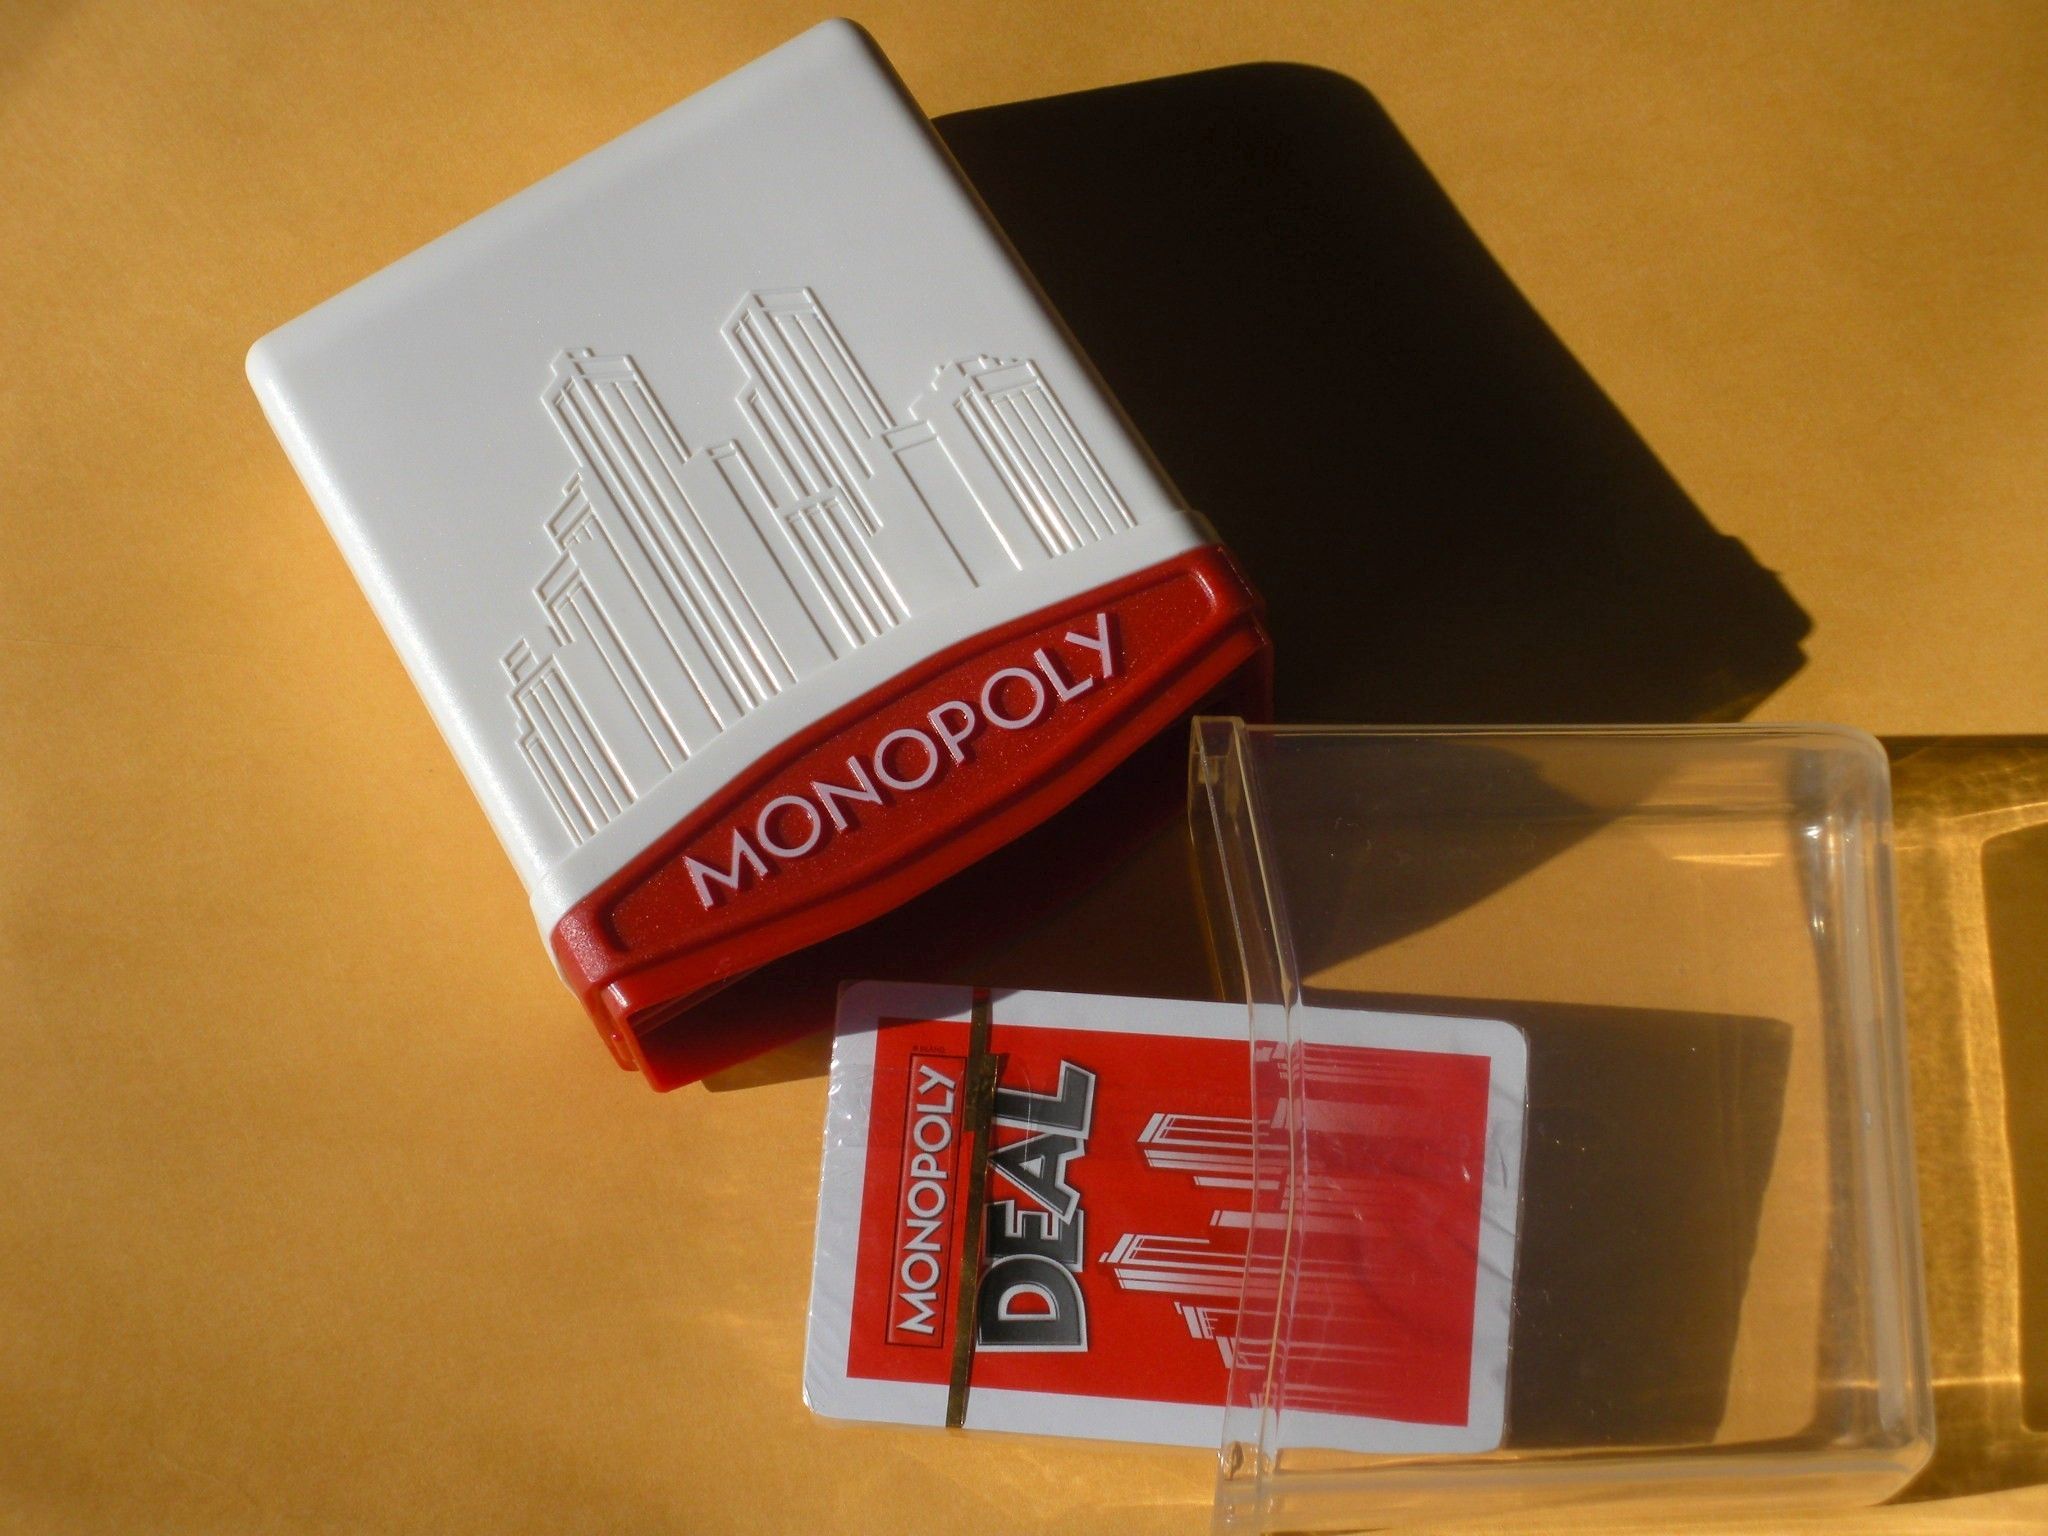 Manoeuvreren belediging Stijgen Monopoly Deal Card Game | Image | BoardGameGeek